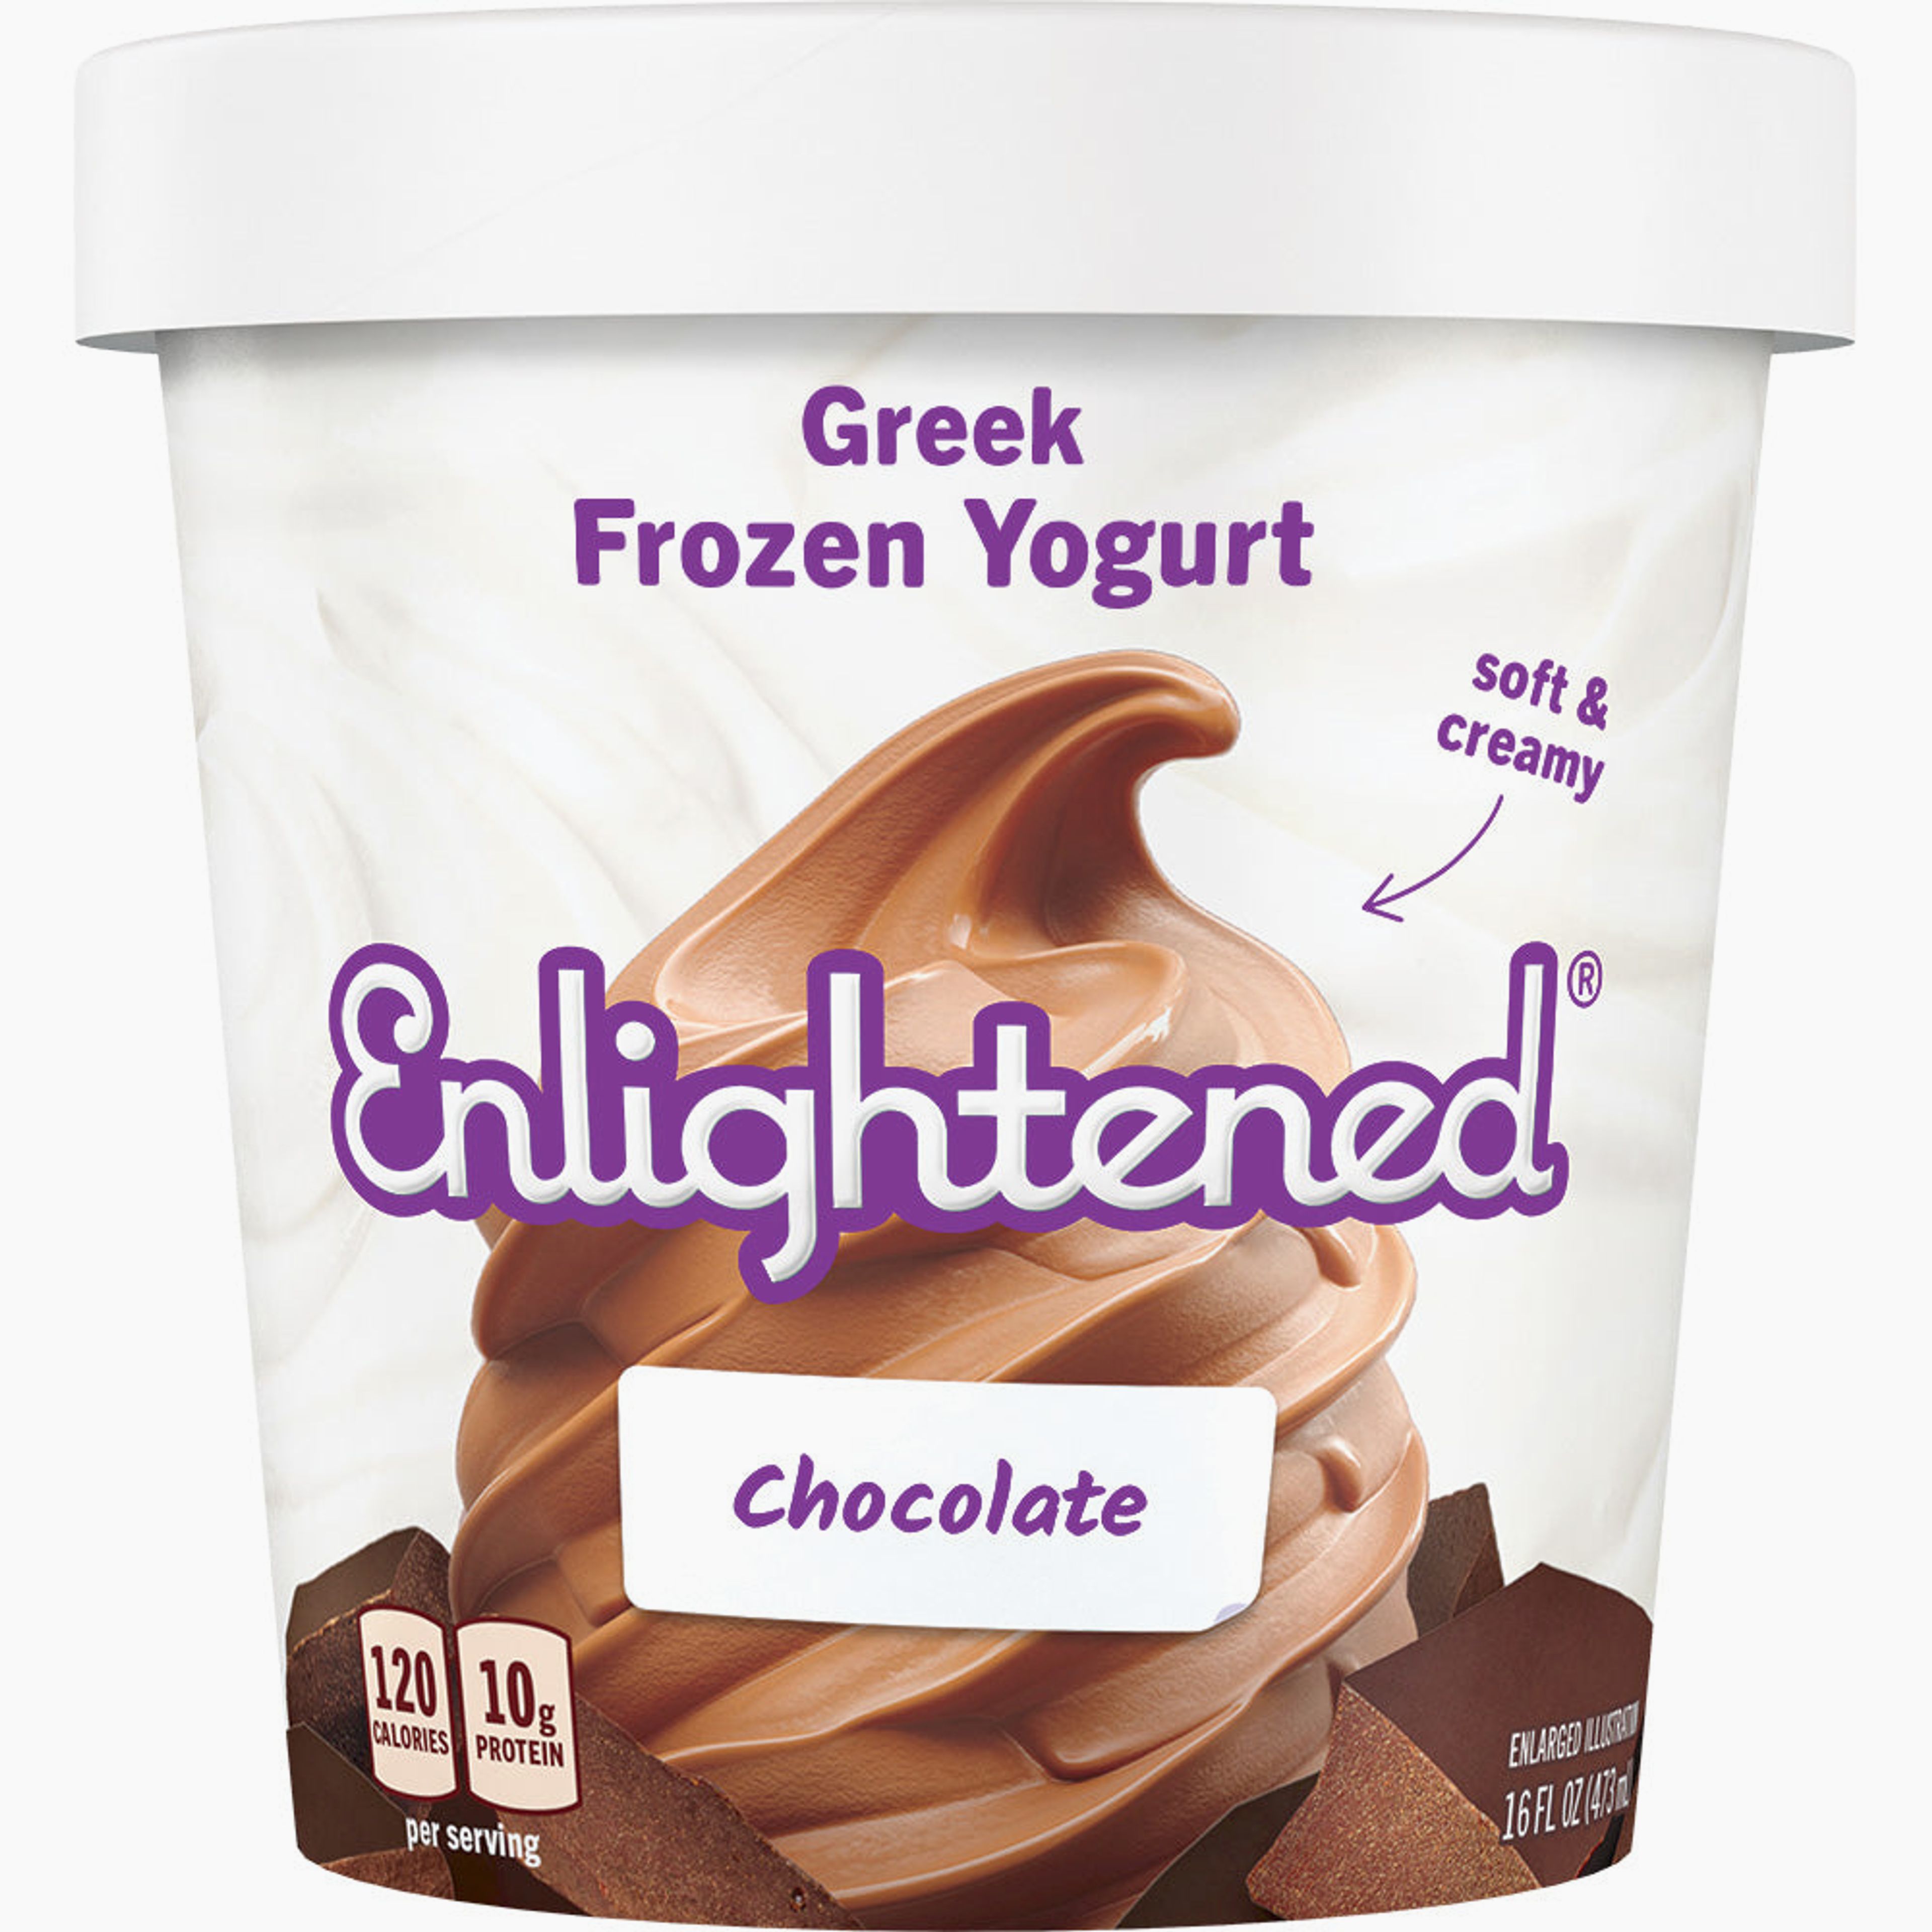 Chocolate Greek Yogurt Pint